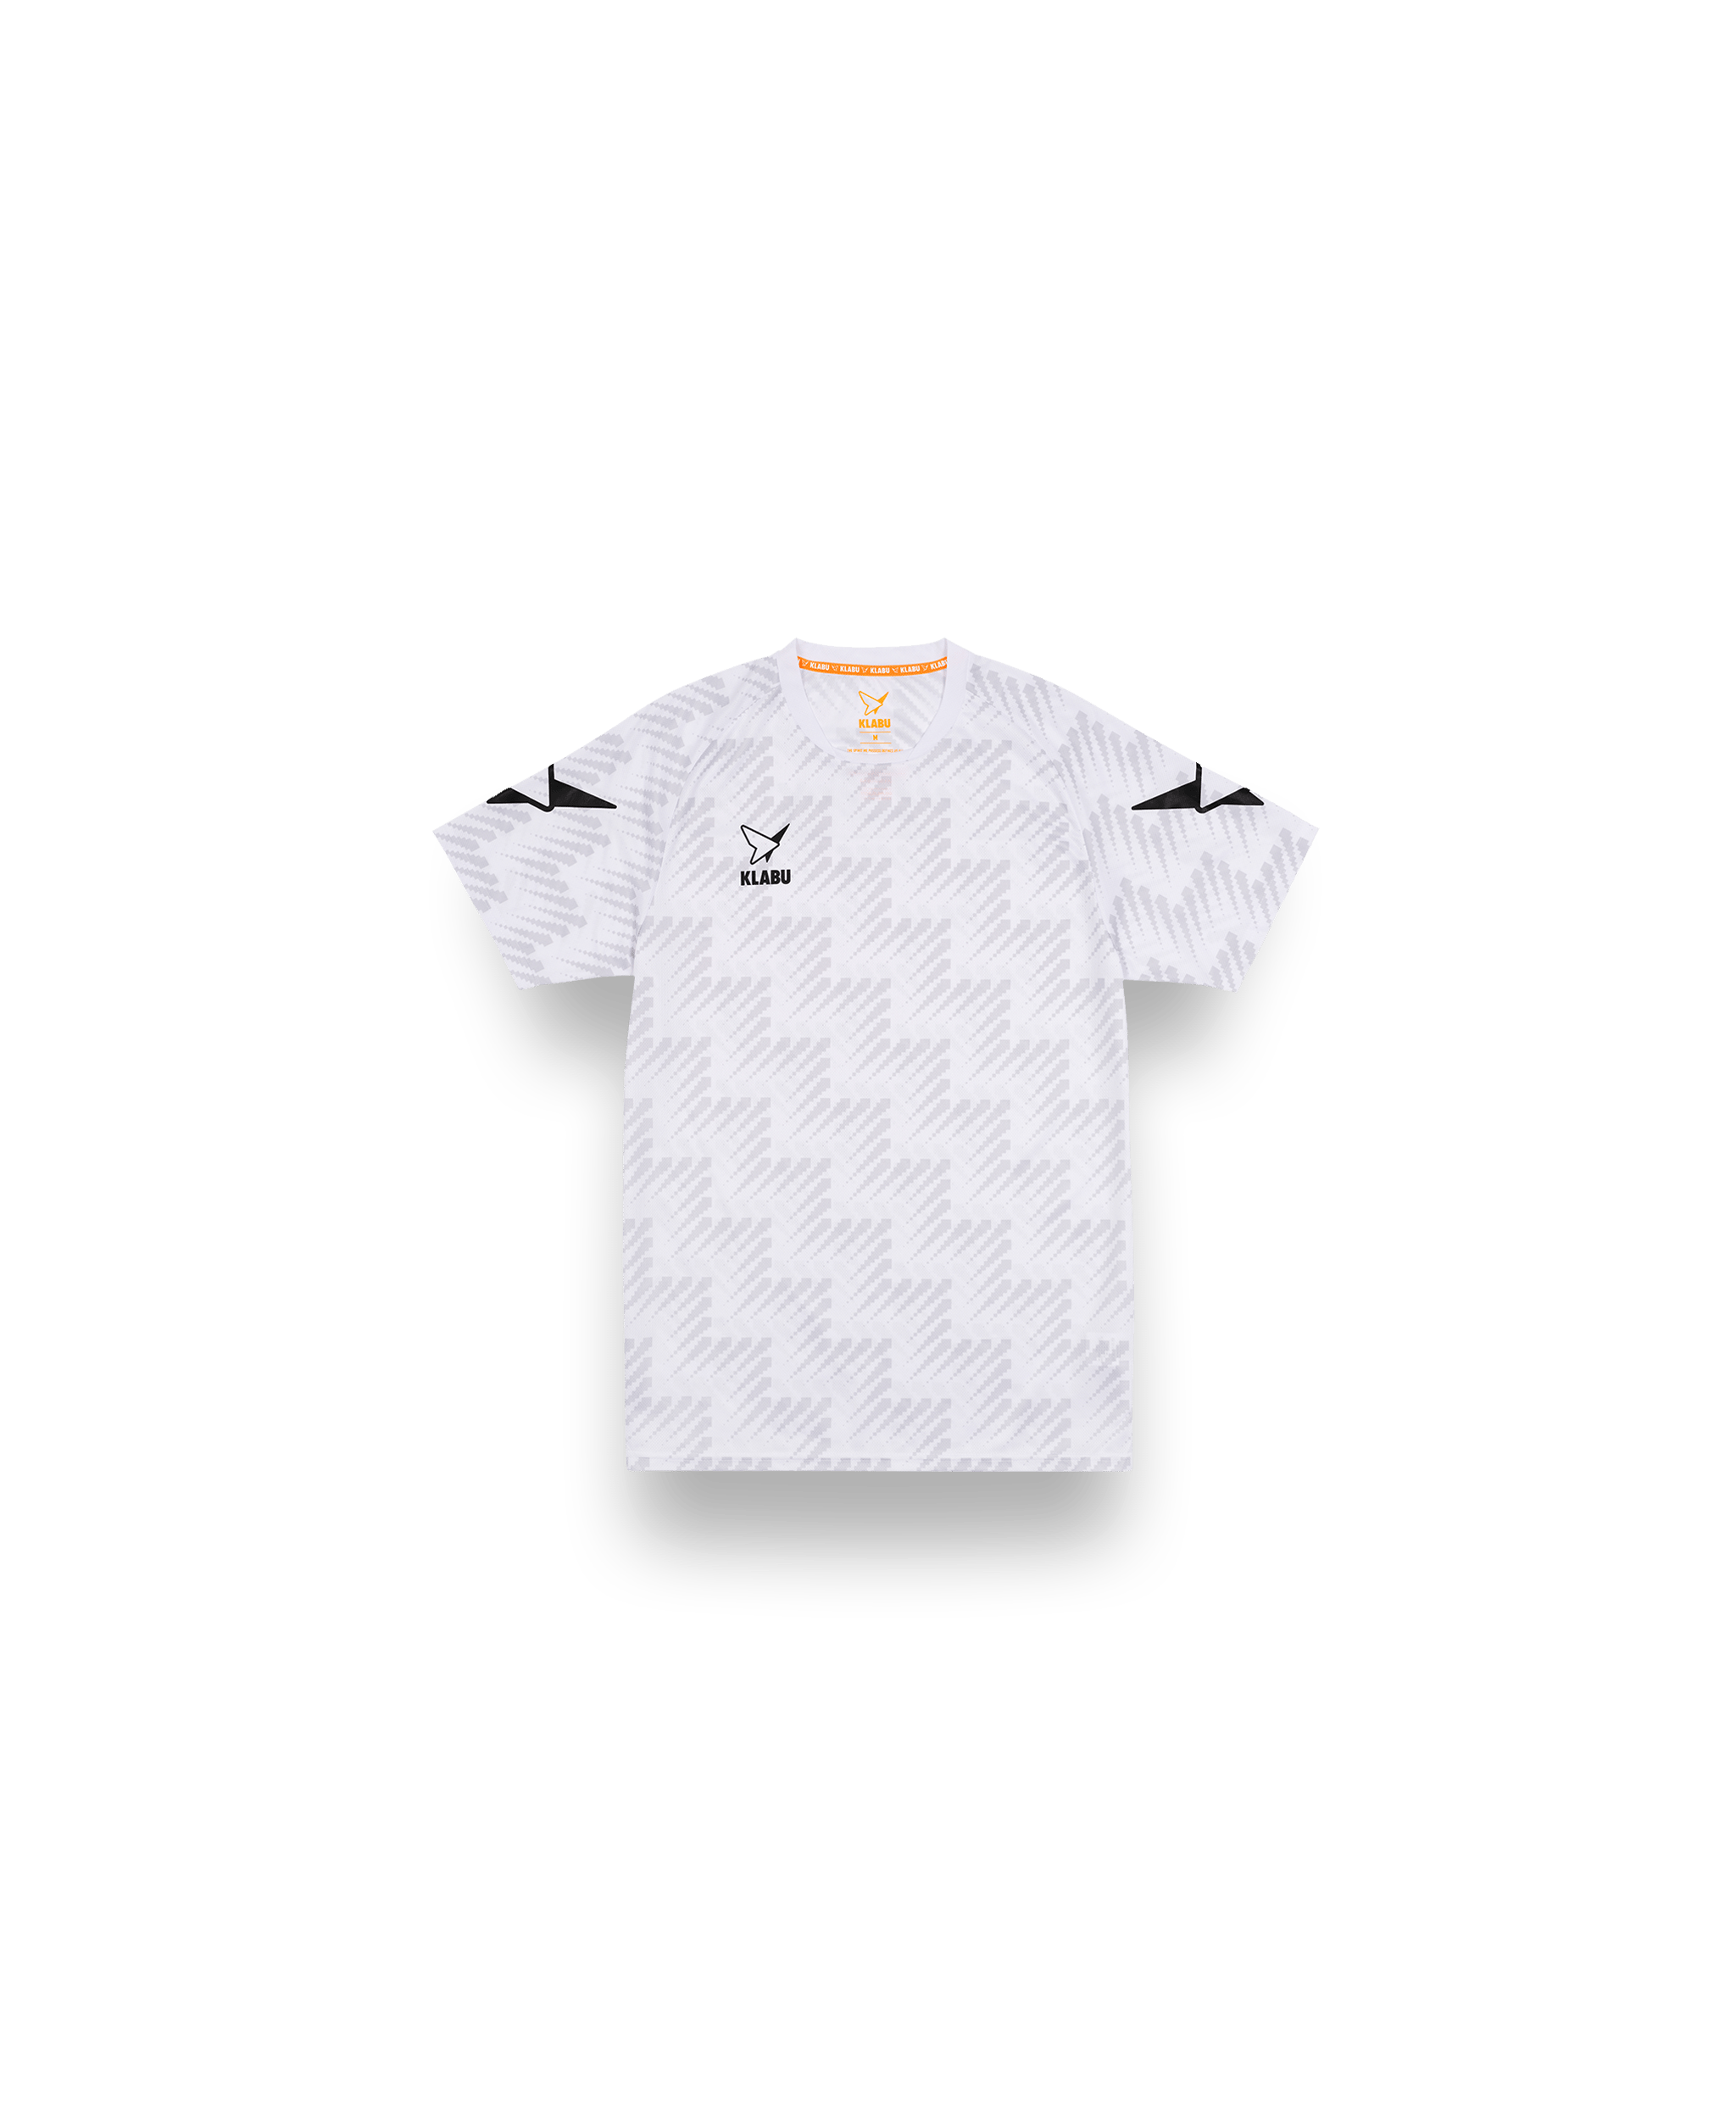 KLABU Teamwear Shirt White